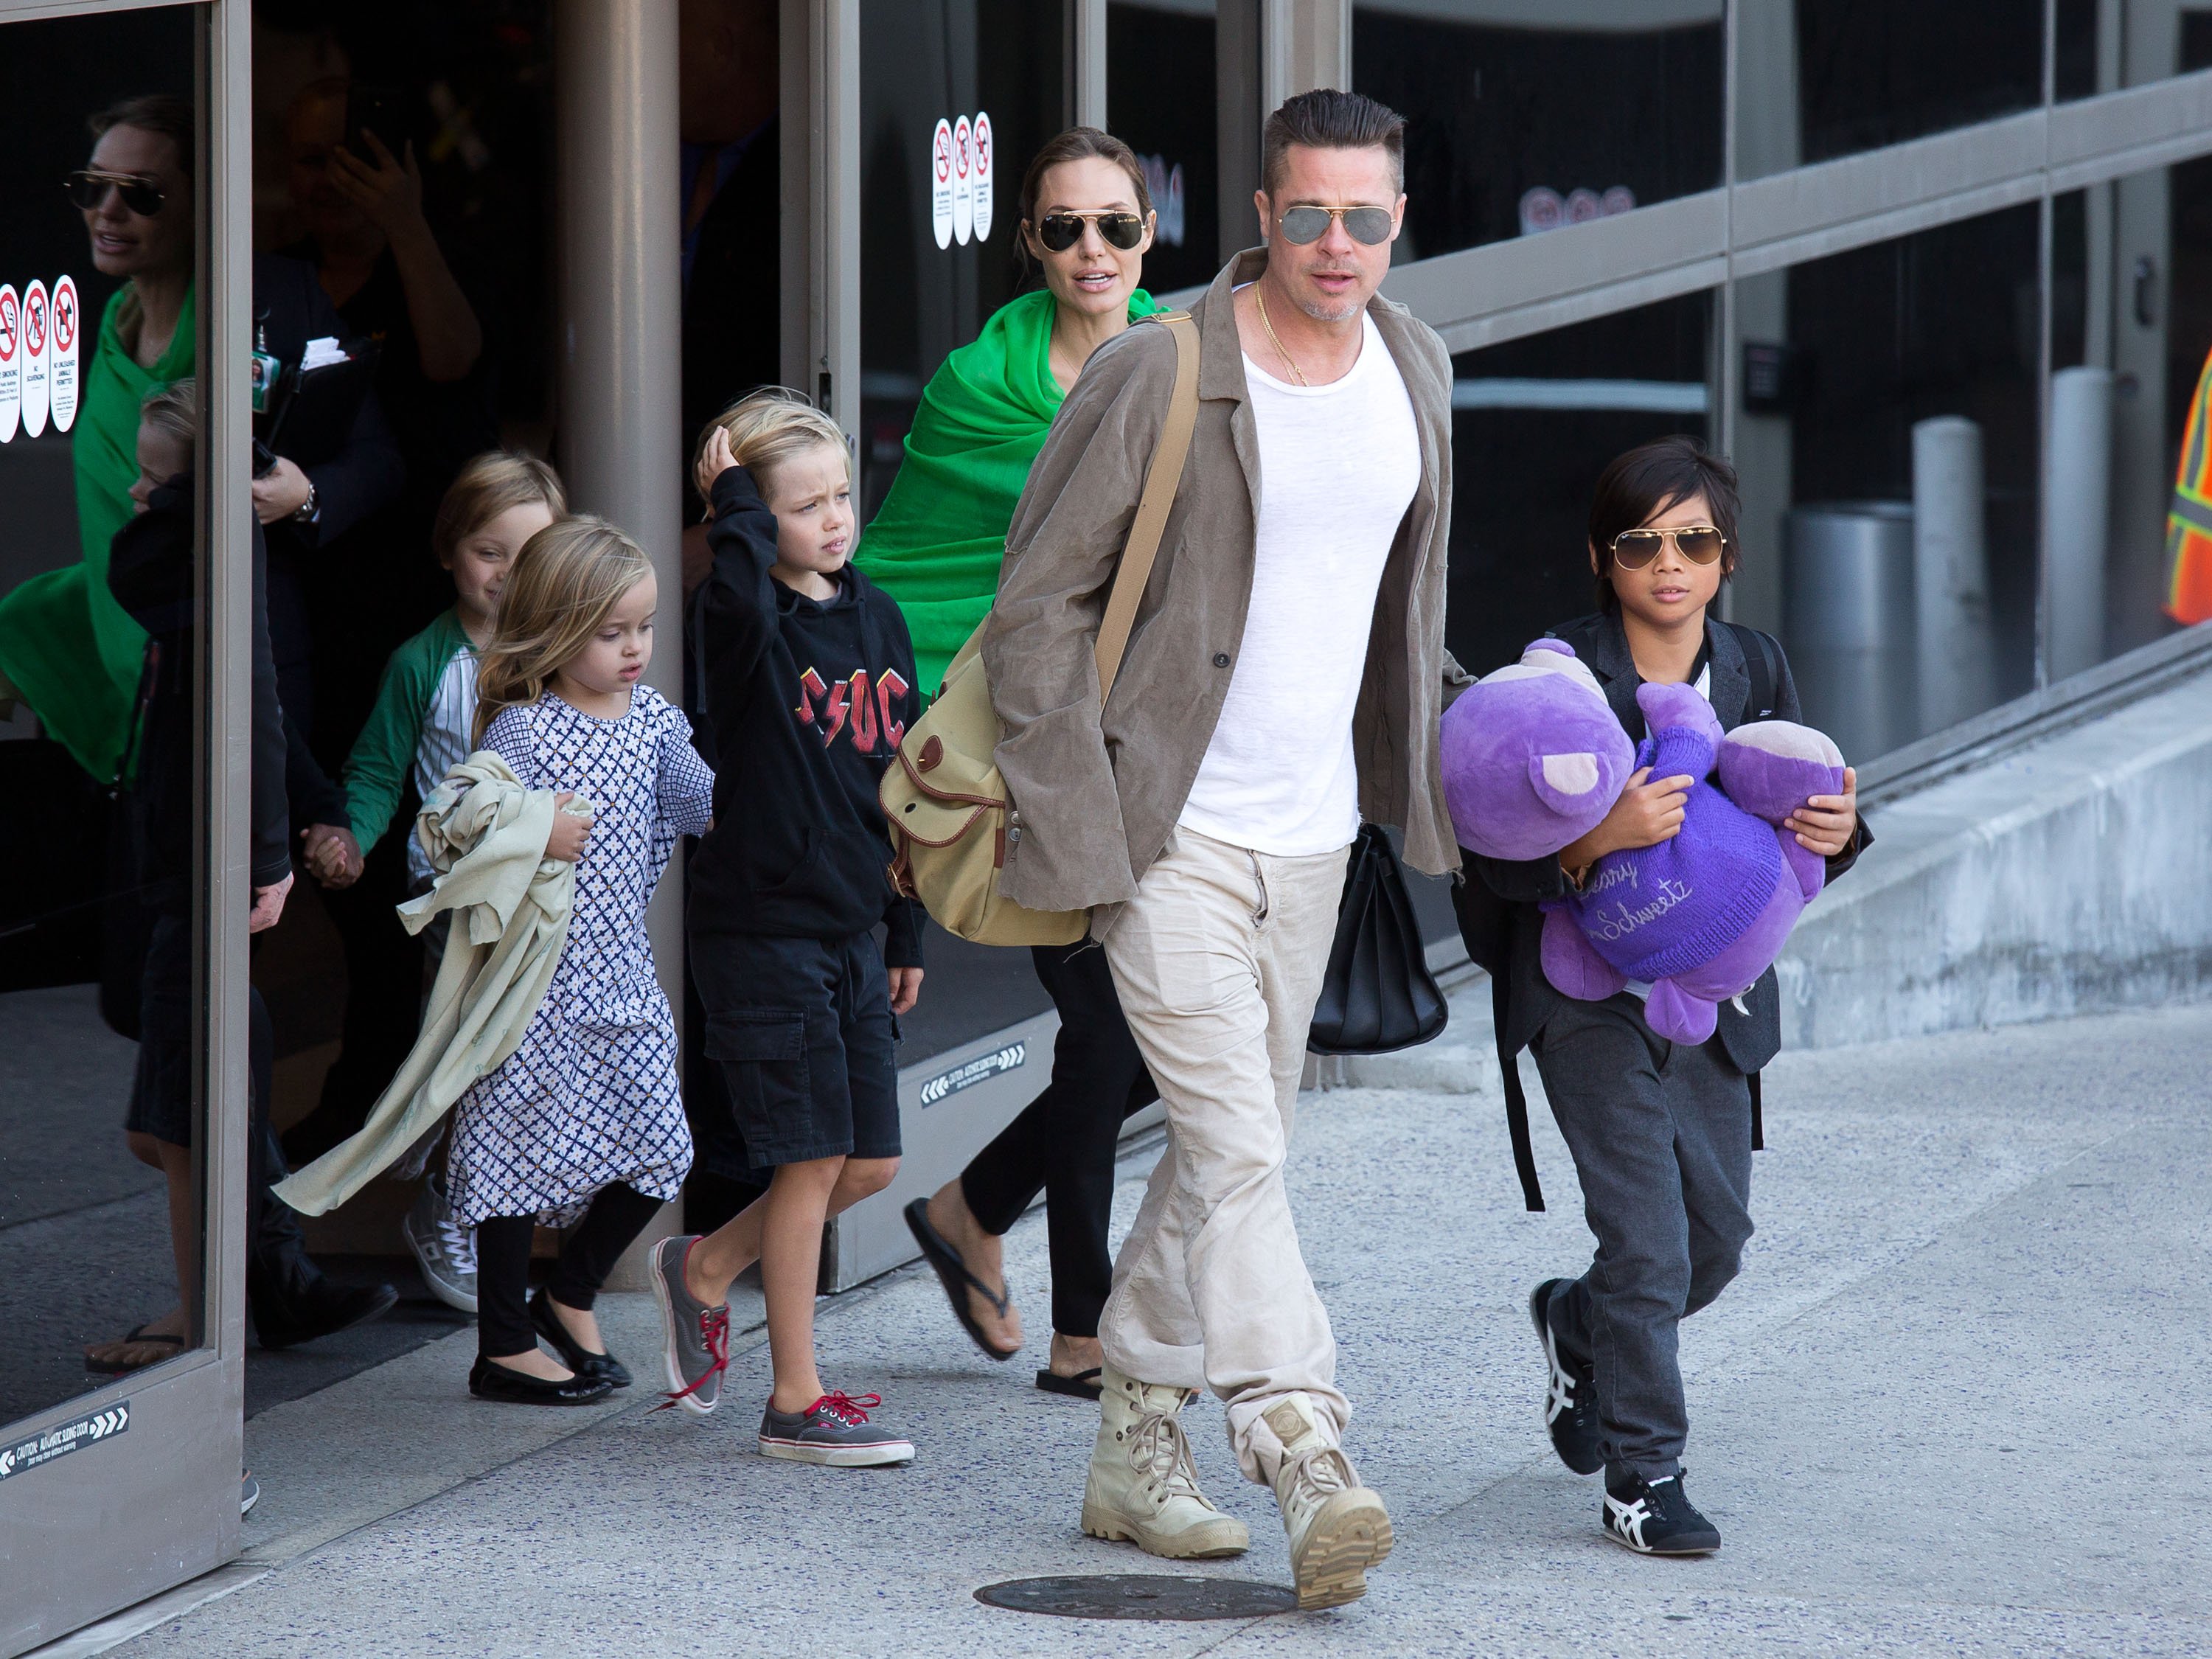 Brad Pitt et Angelina Jolie après leur atterrissage à l'aéroport international de Los Angeles avec leurs enfants, Pax Jolie-Pitt, Shiloh Jolie-Pitt, Vivienne Jolie-Pitt et Knox Jolie-Pitt le 05 février 2014 à Los Angeles, Californie. | Source : Getty Images